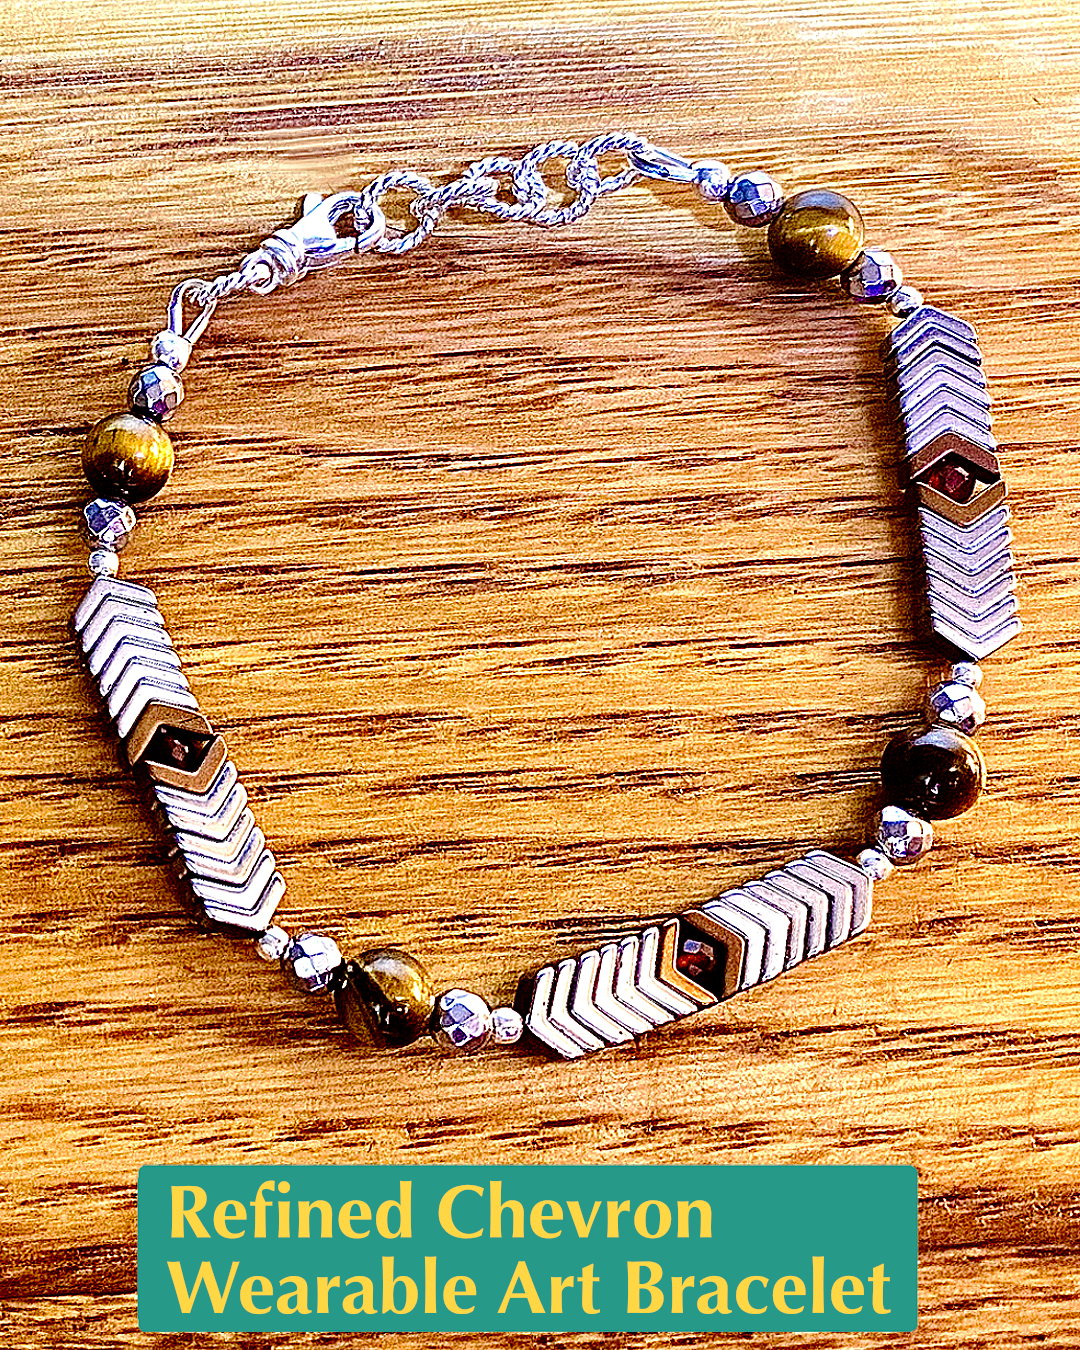 Refined Chevron Wearable Art Bracelet